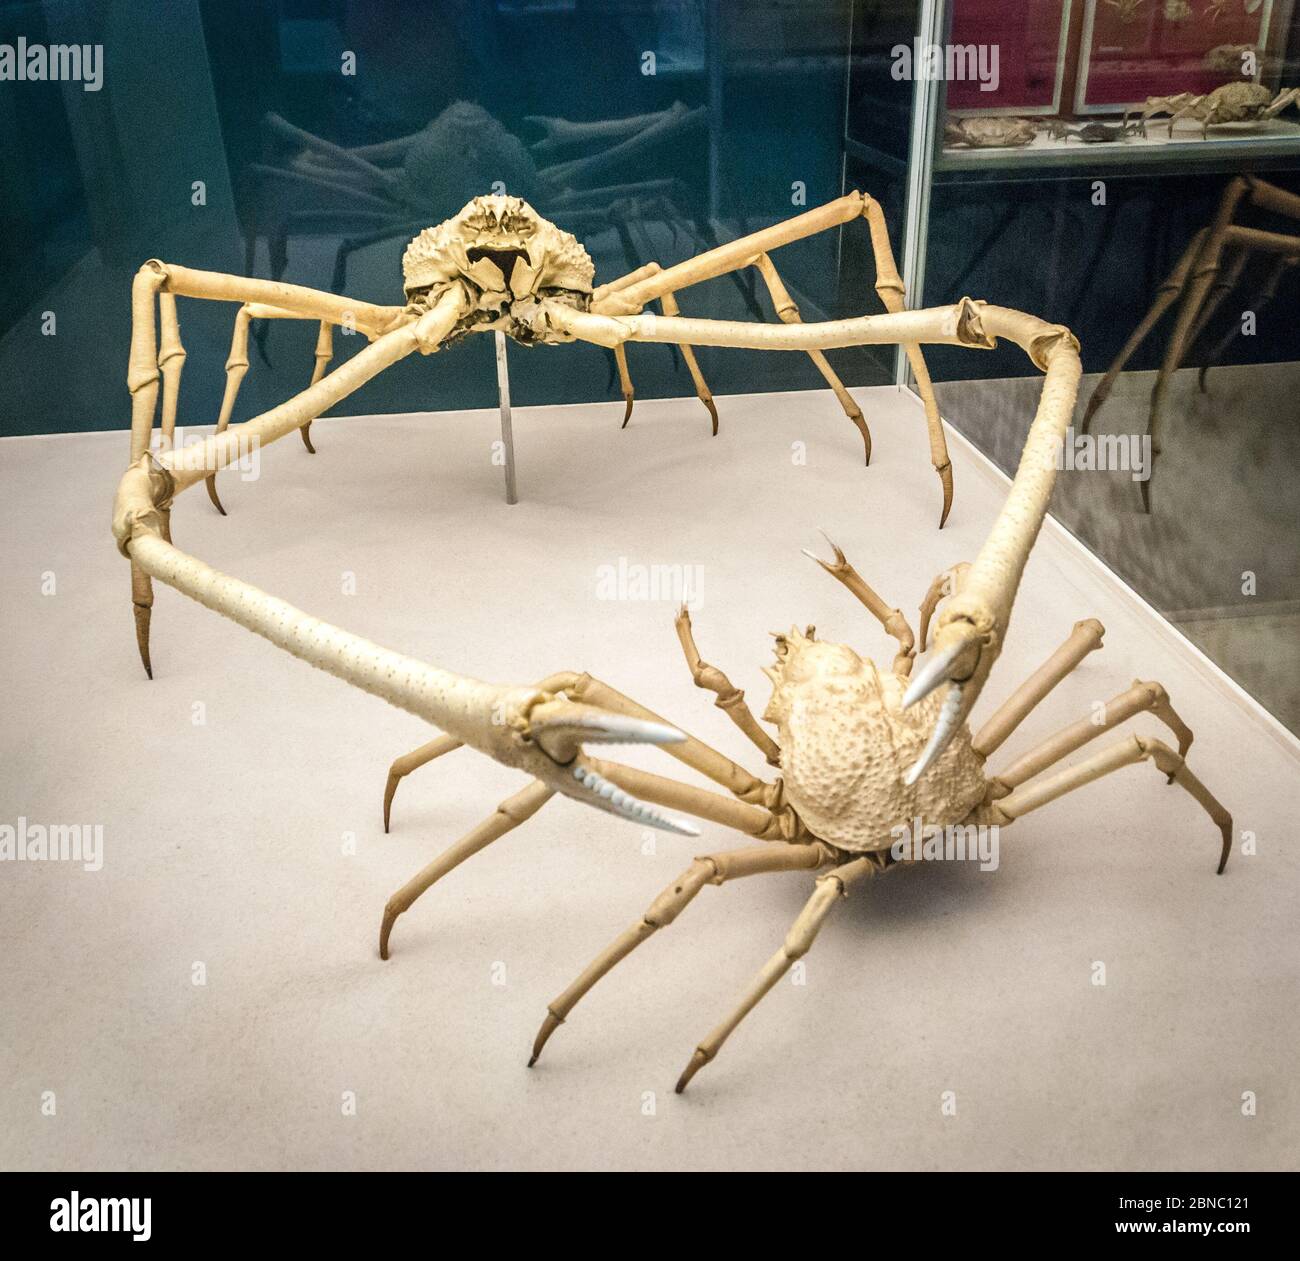 Squelette de crabe araignée japonais (Macrocheira kaempferi). Est une espèce de crabe marin qui vit dans les eaux autour du Japon. Il a la plus grande portée de jambe Banque D'Images